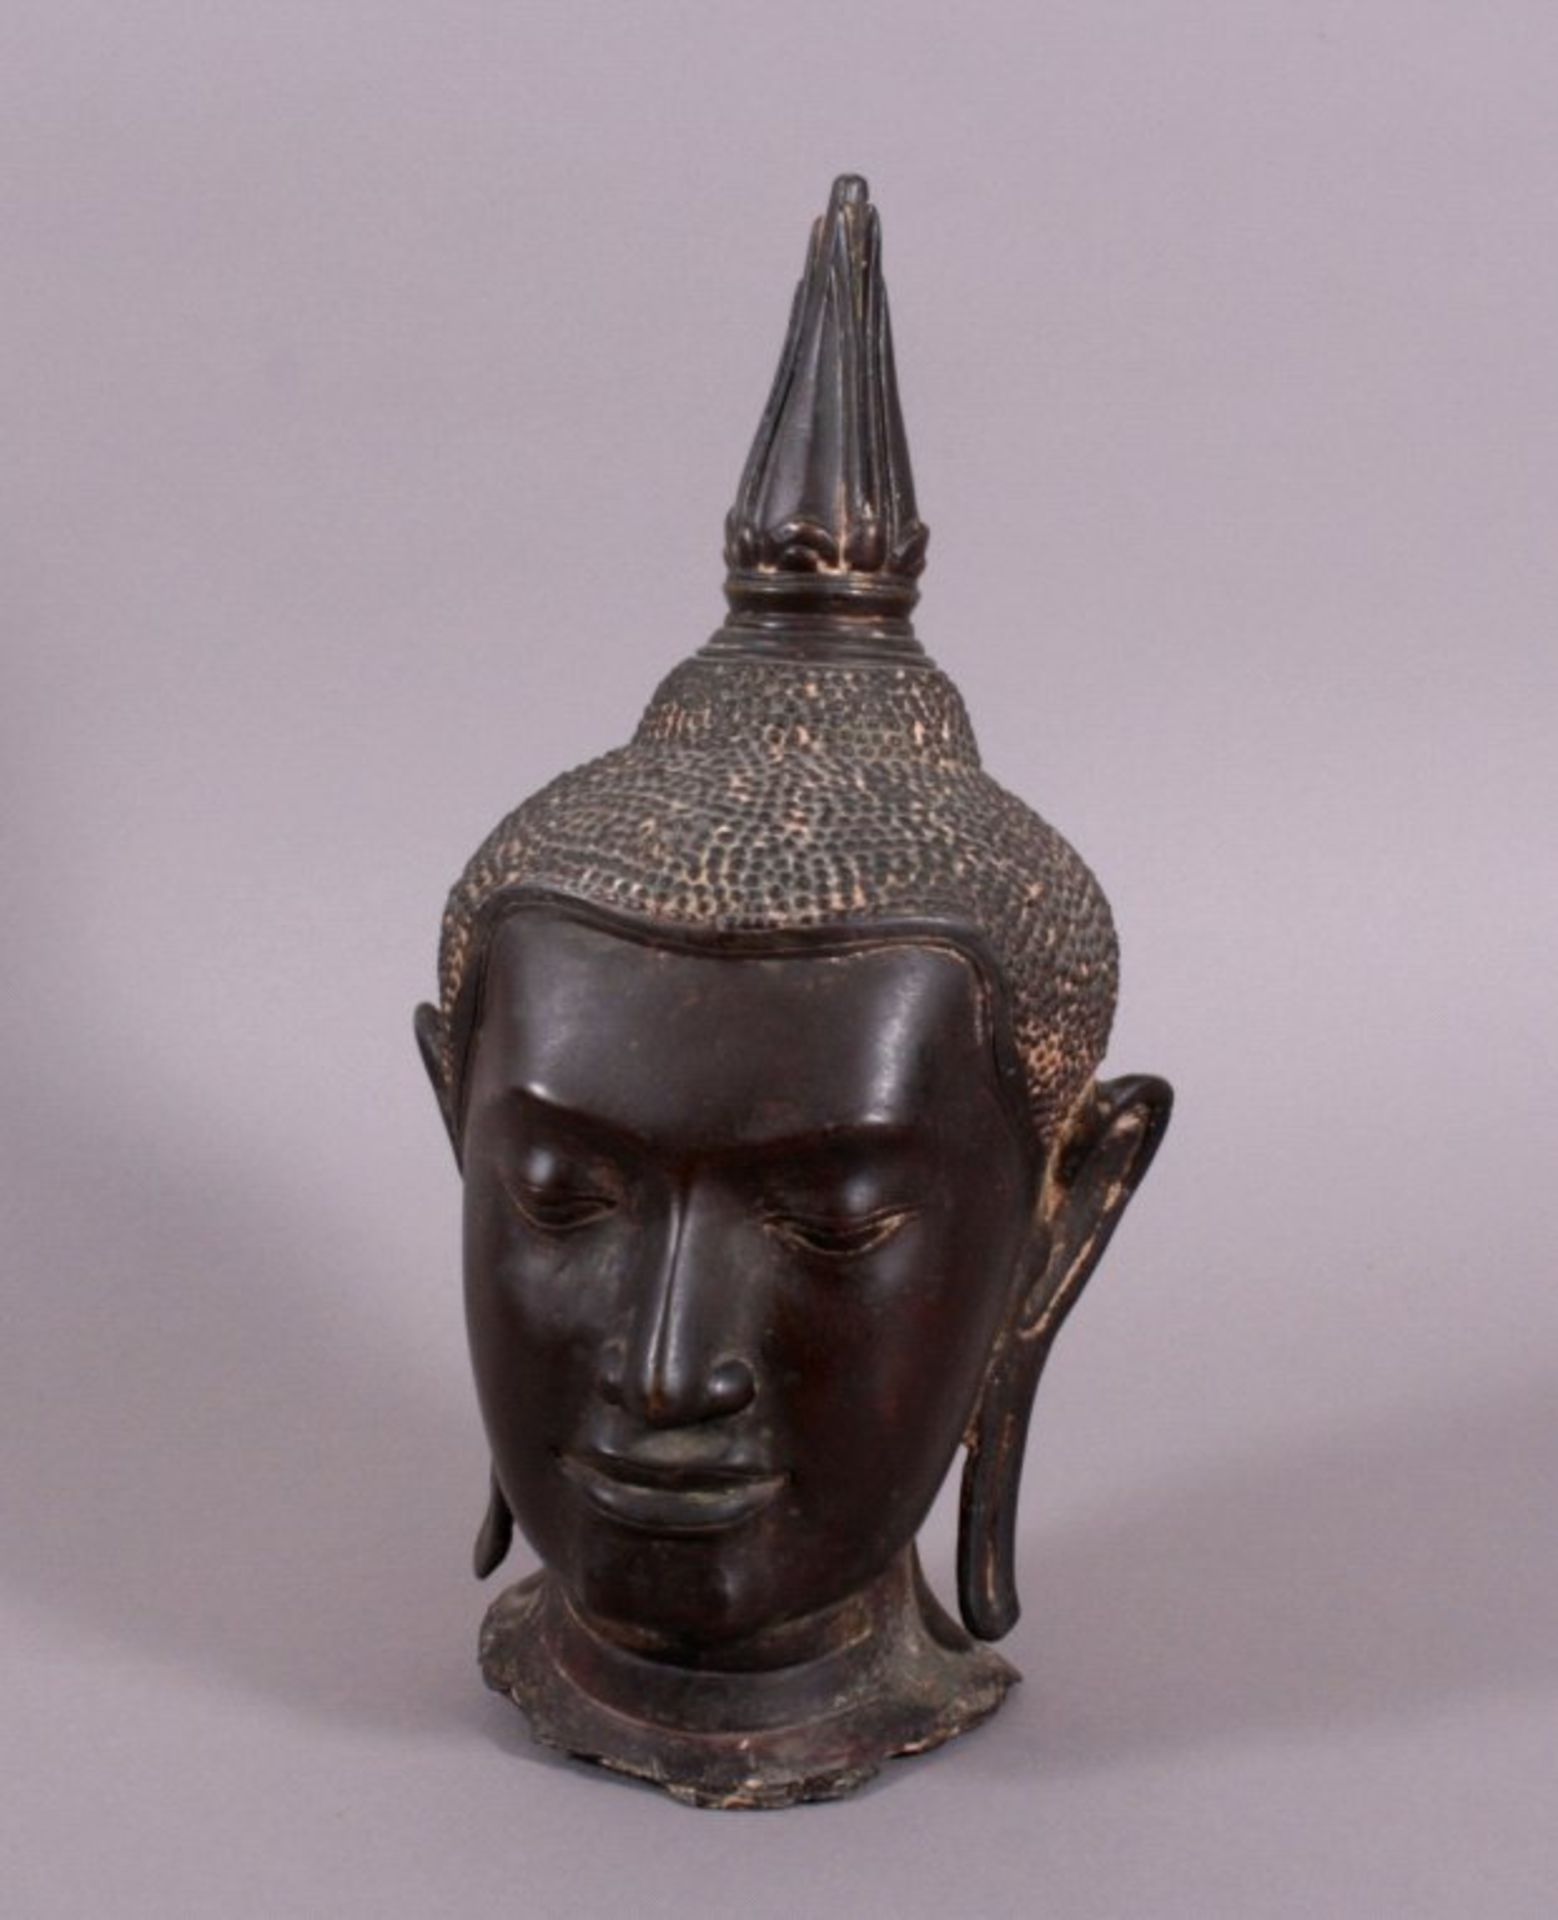 Buddhakopf aus Bronze Thailand 17./18. Jh.Sehr schöne und ausdrucksstarke Gesichtszüge,